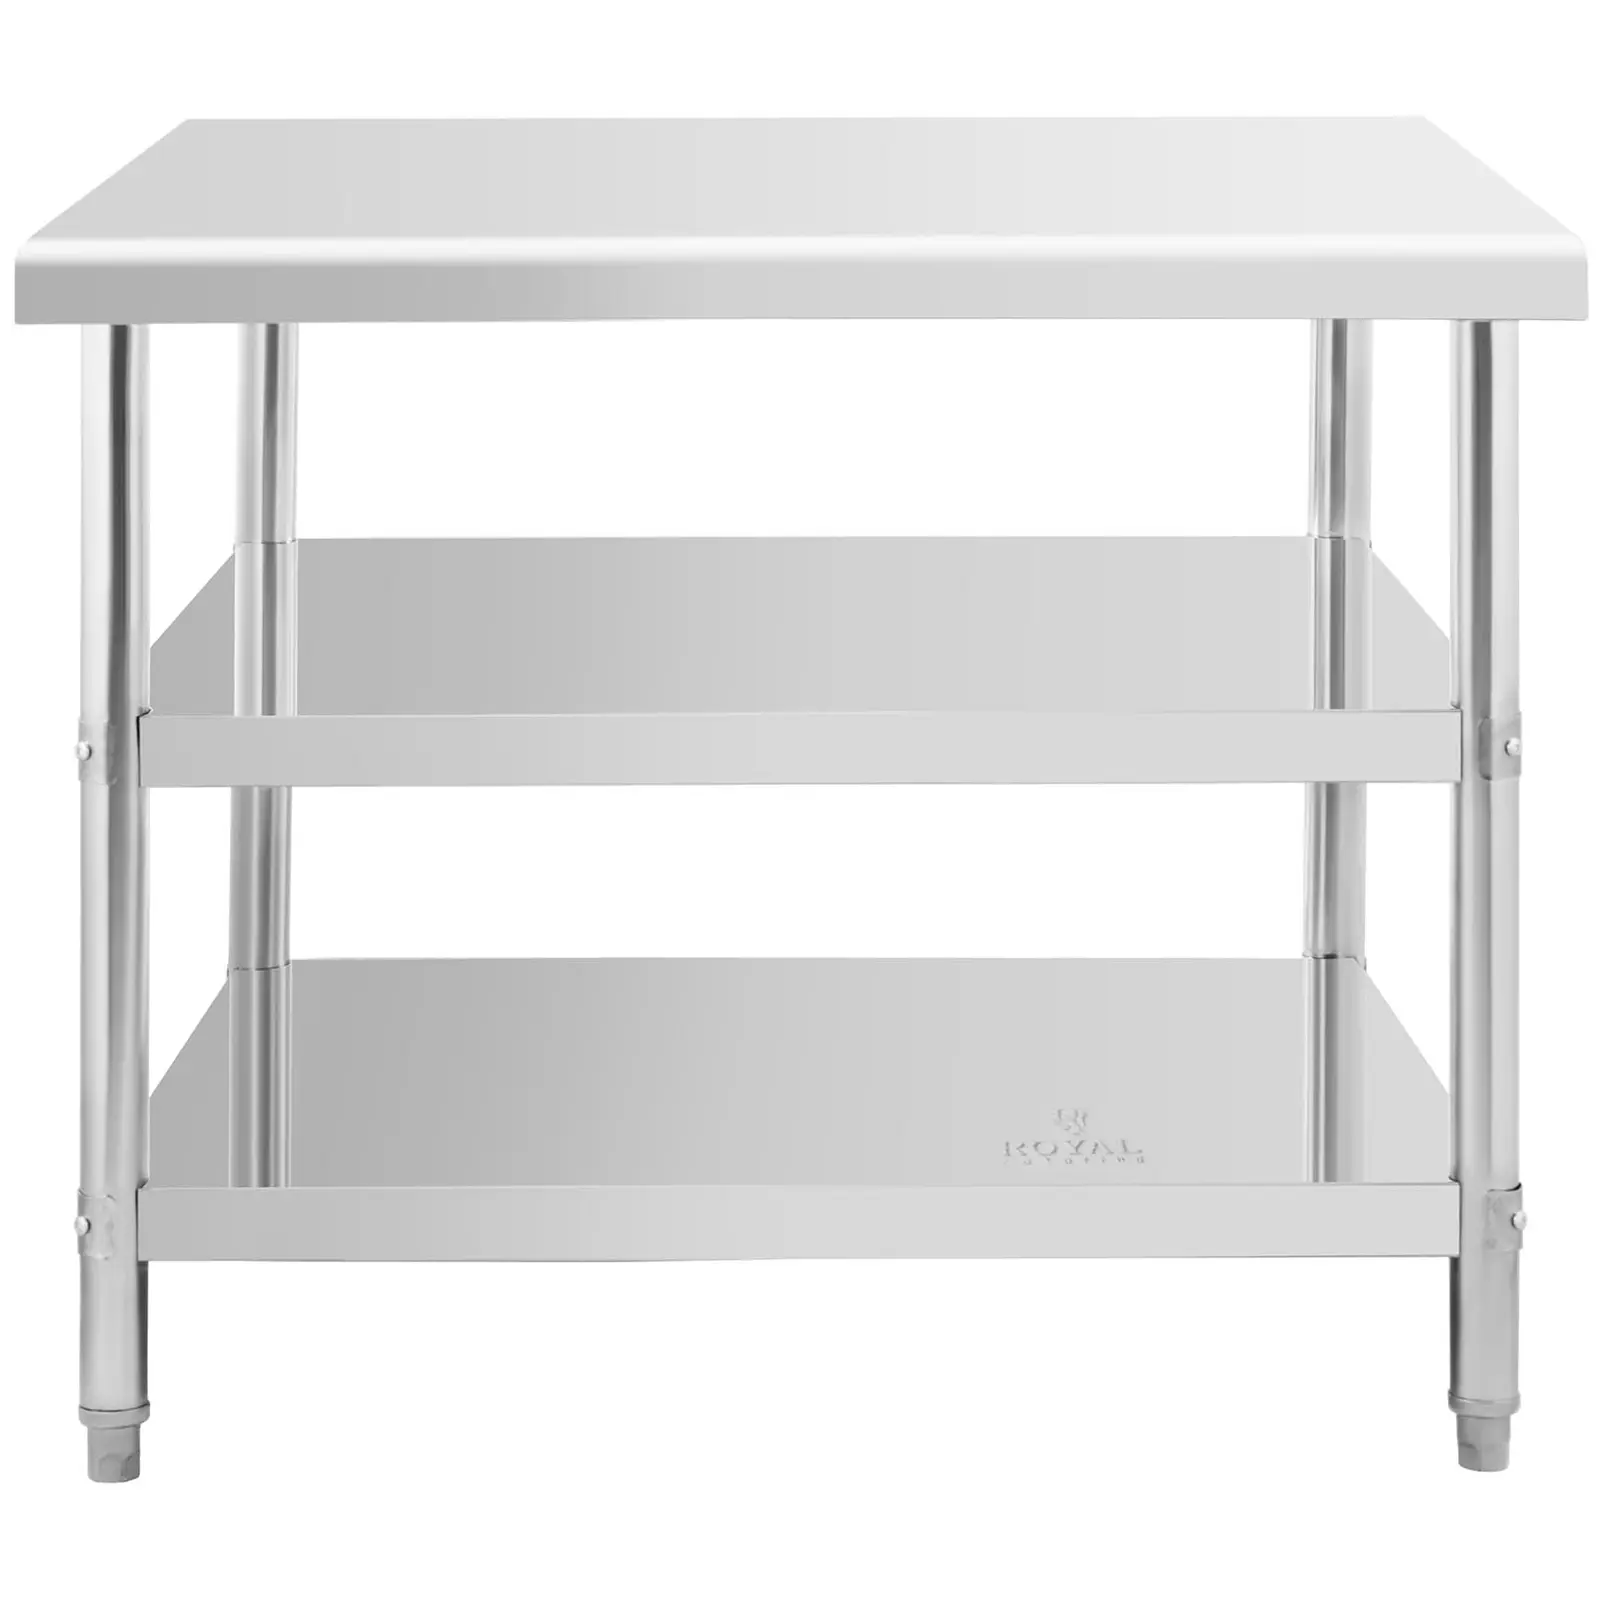 Pracovný stôl z nehrdzavejúcej ocele - 100 x 90 x 5 cm - 195 kg - 2 police 